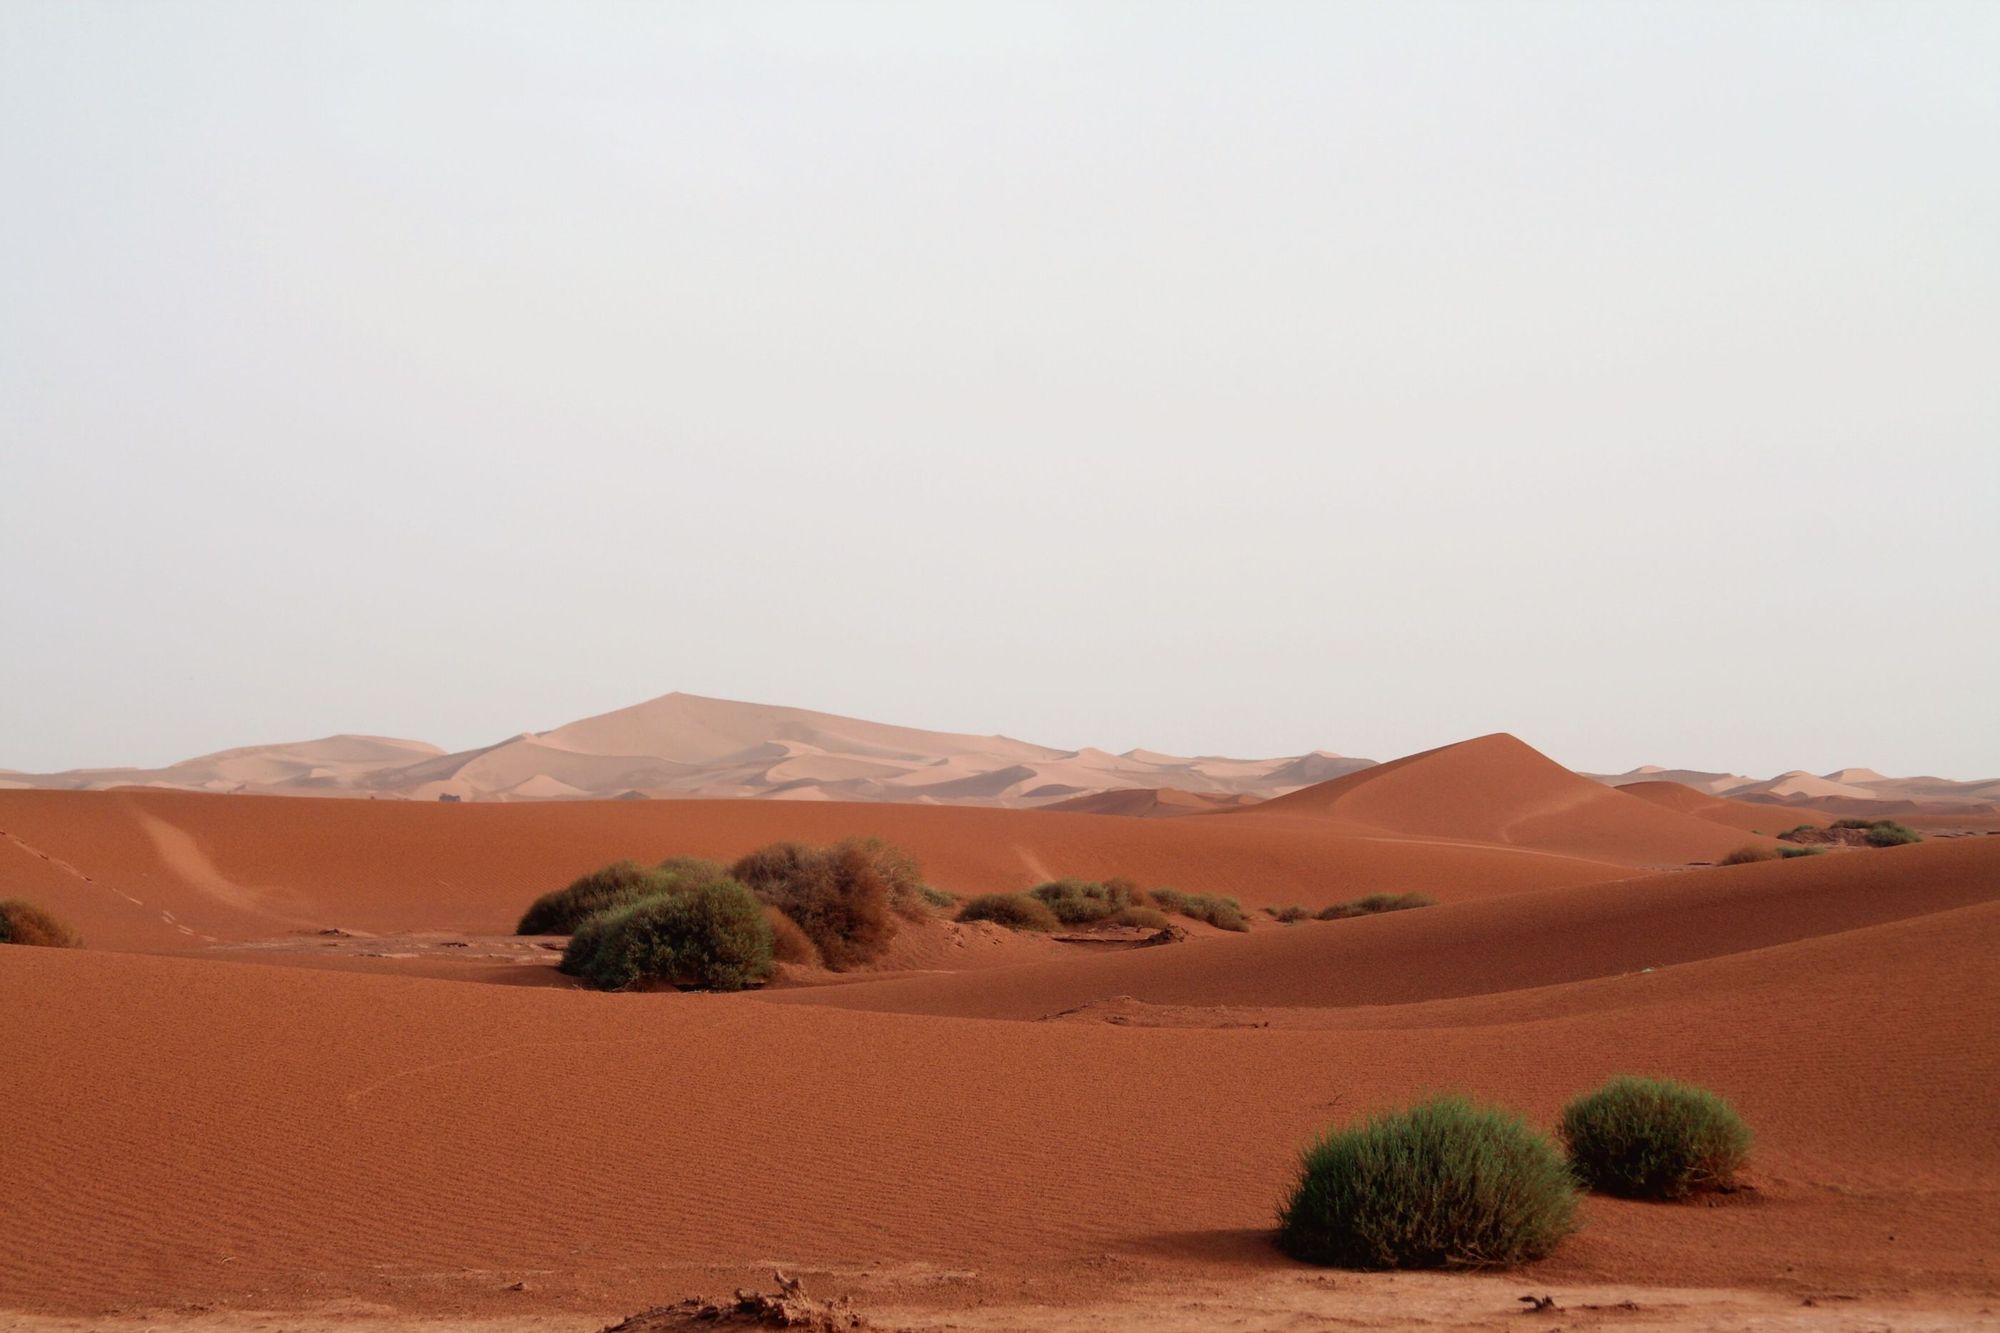 The red dunes of Erg Chigaga. Photo: Canva.